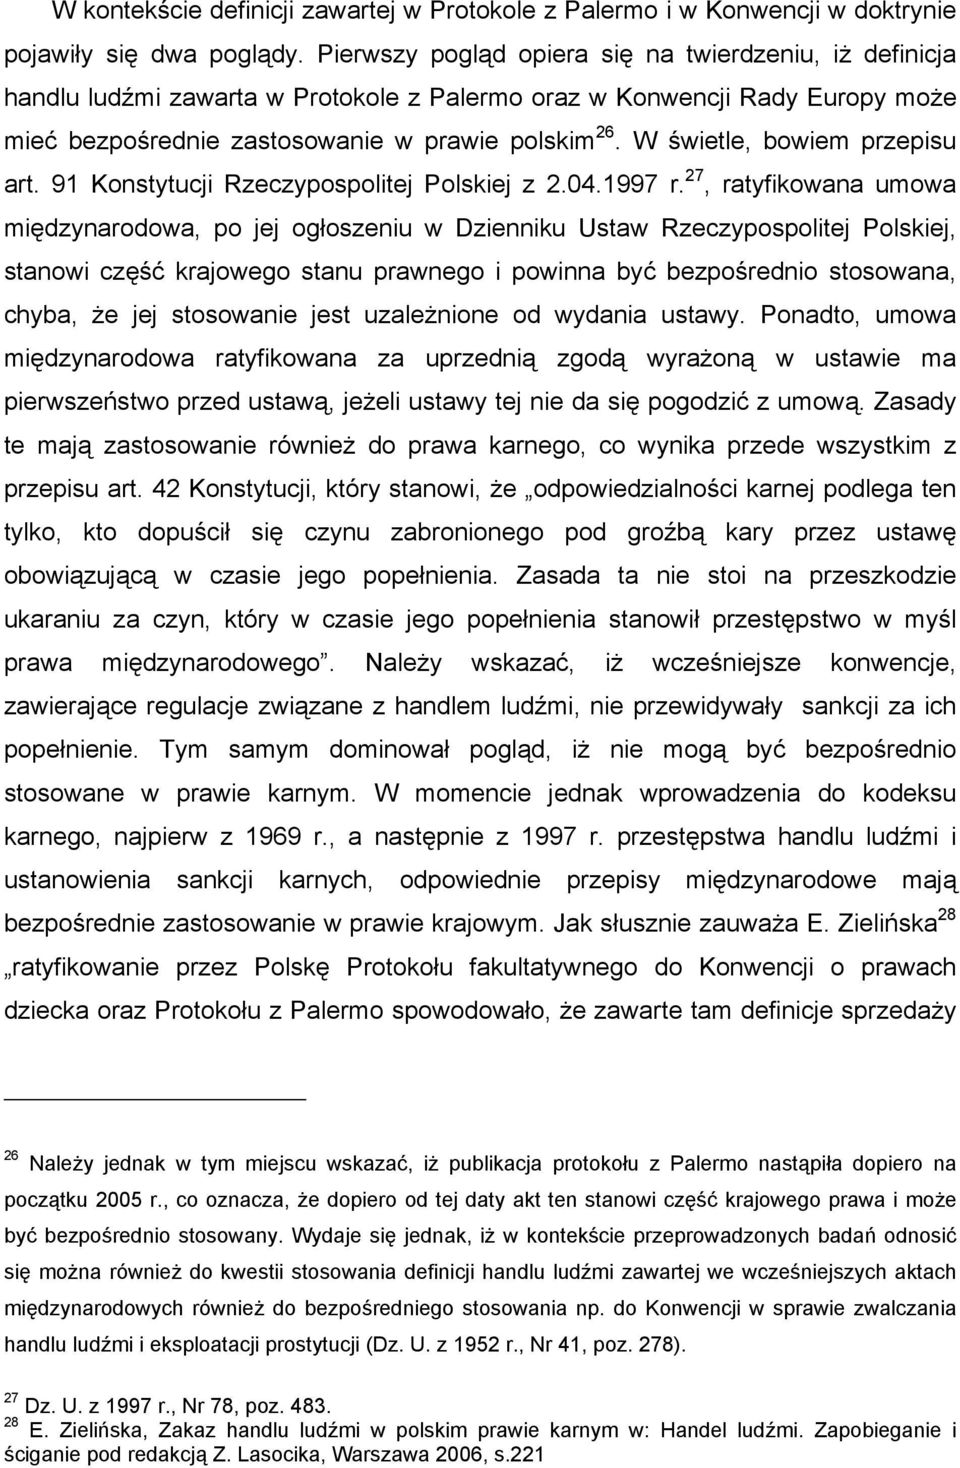 W świetle, bowiem przepisu art. 91 Konstytucji Rzeczypospolitej Polskiej z 2.04.1997 r.